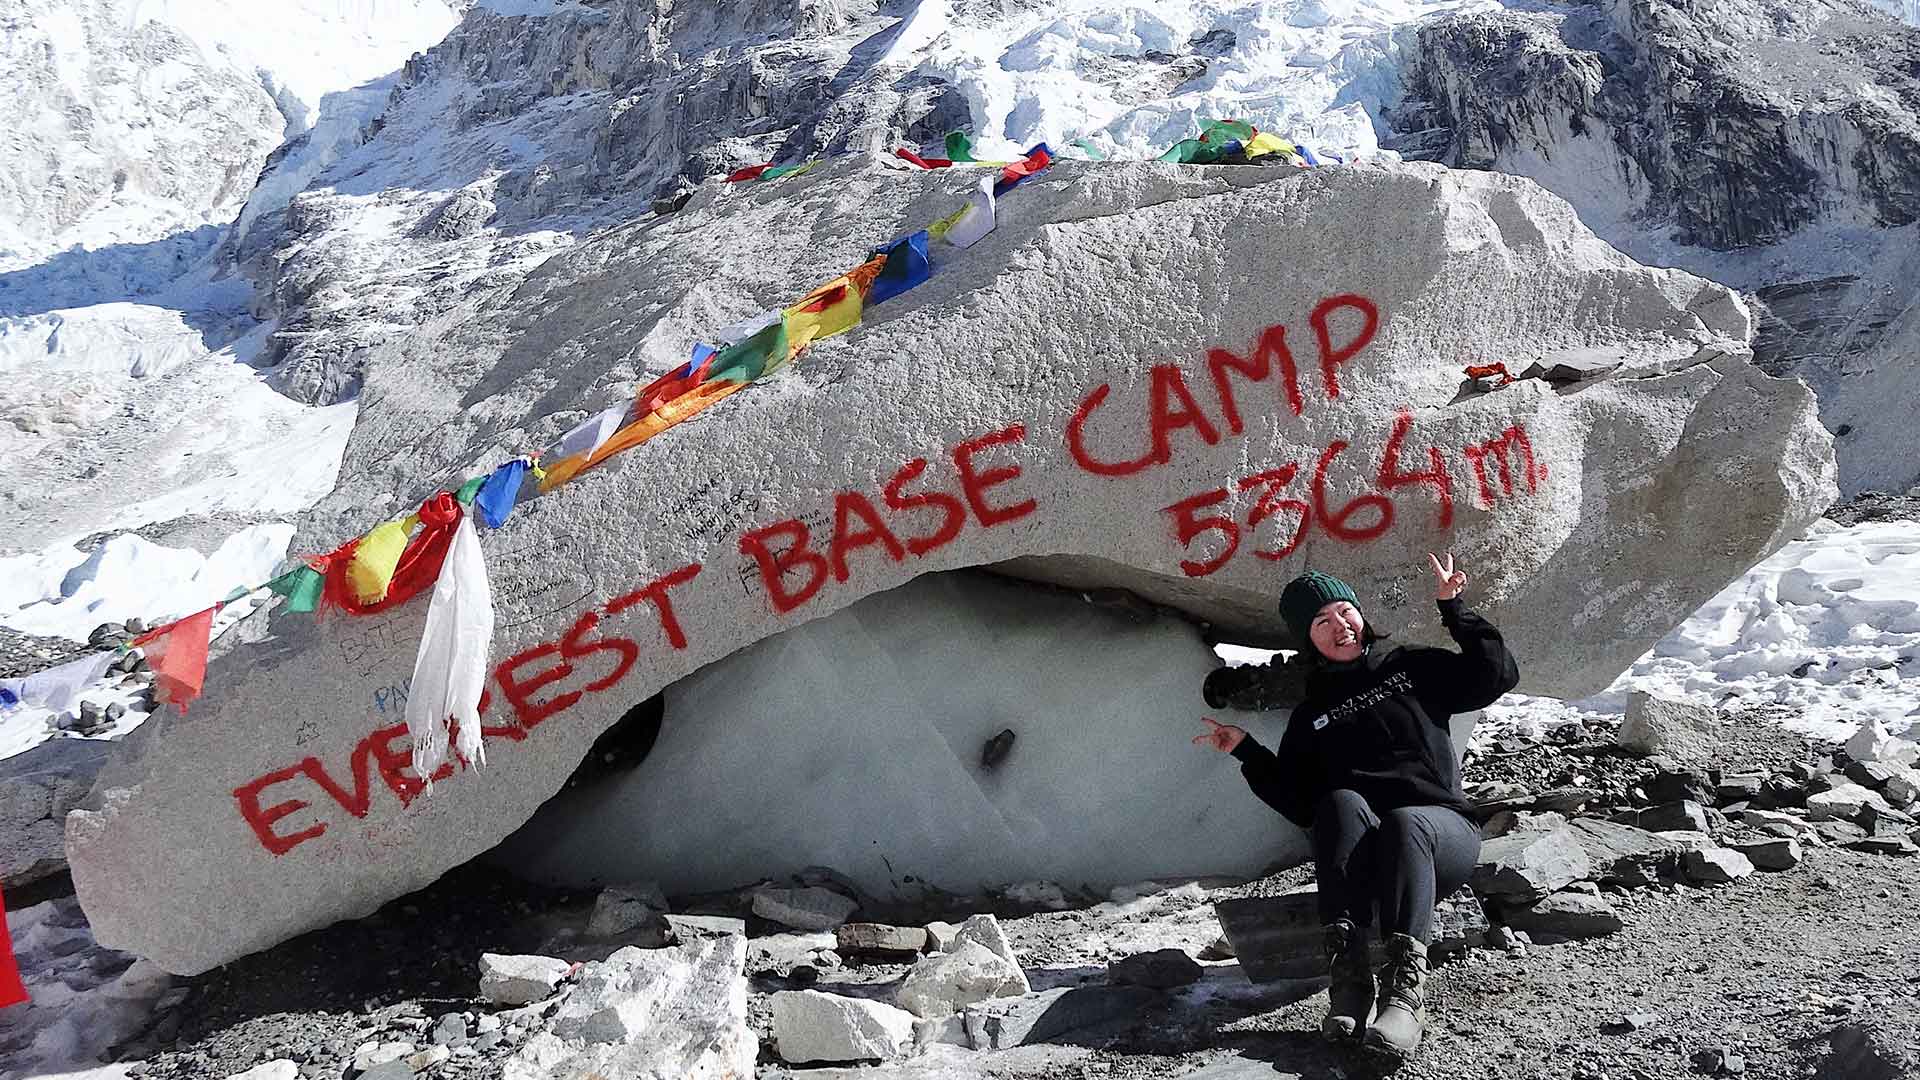 everest base camp trek and volunteering 4 weeks